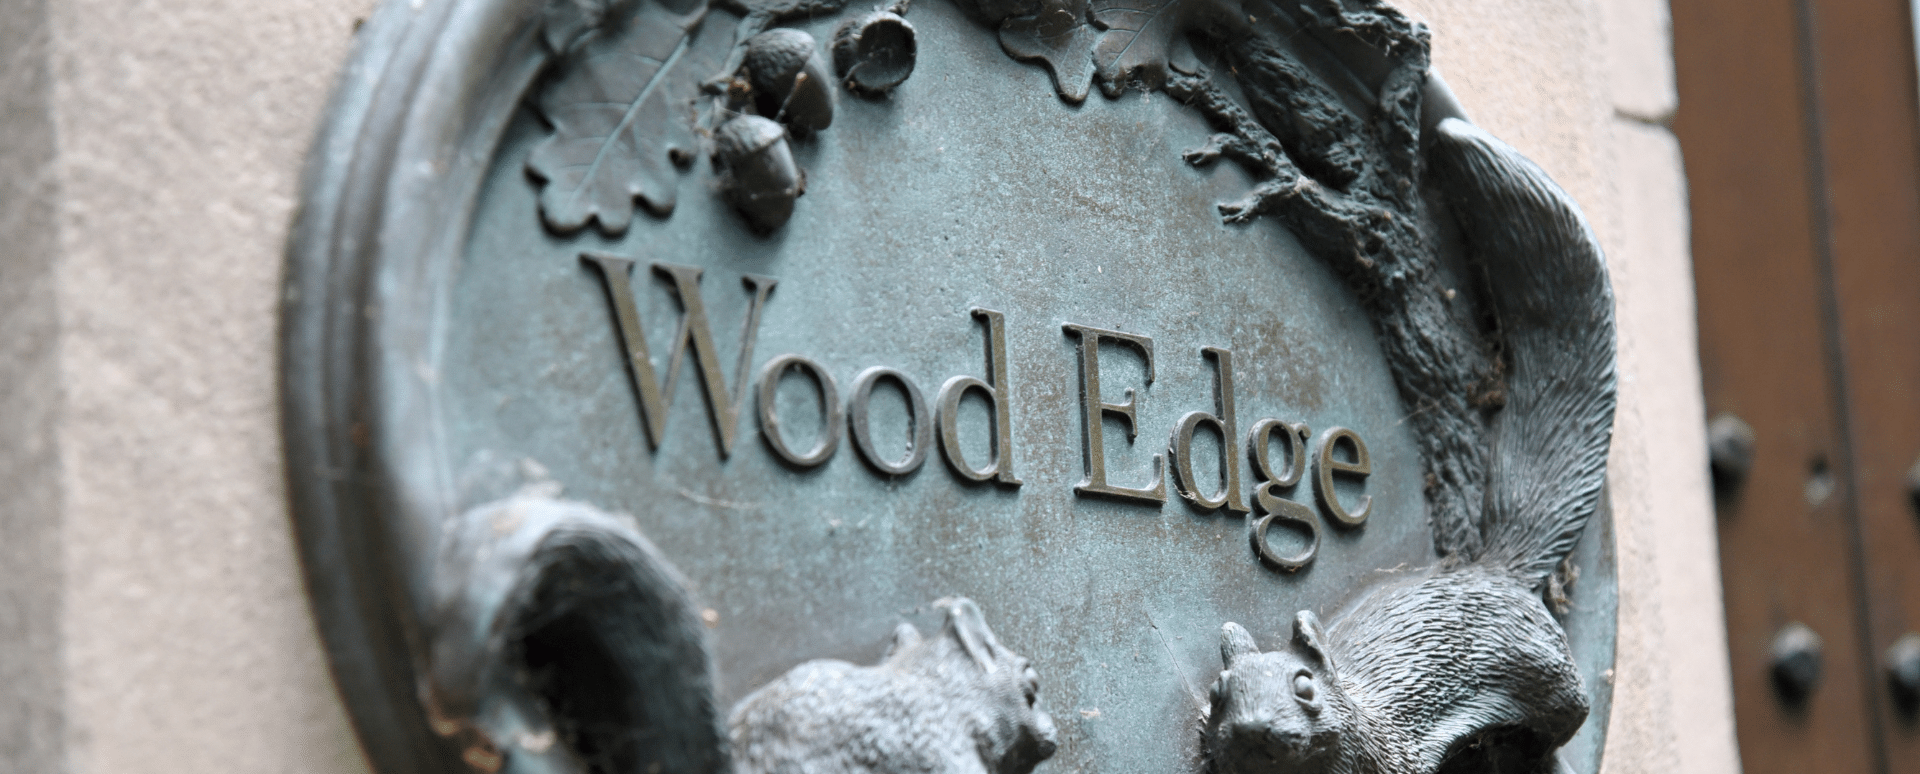 Wood Edge Plaque